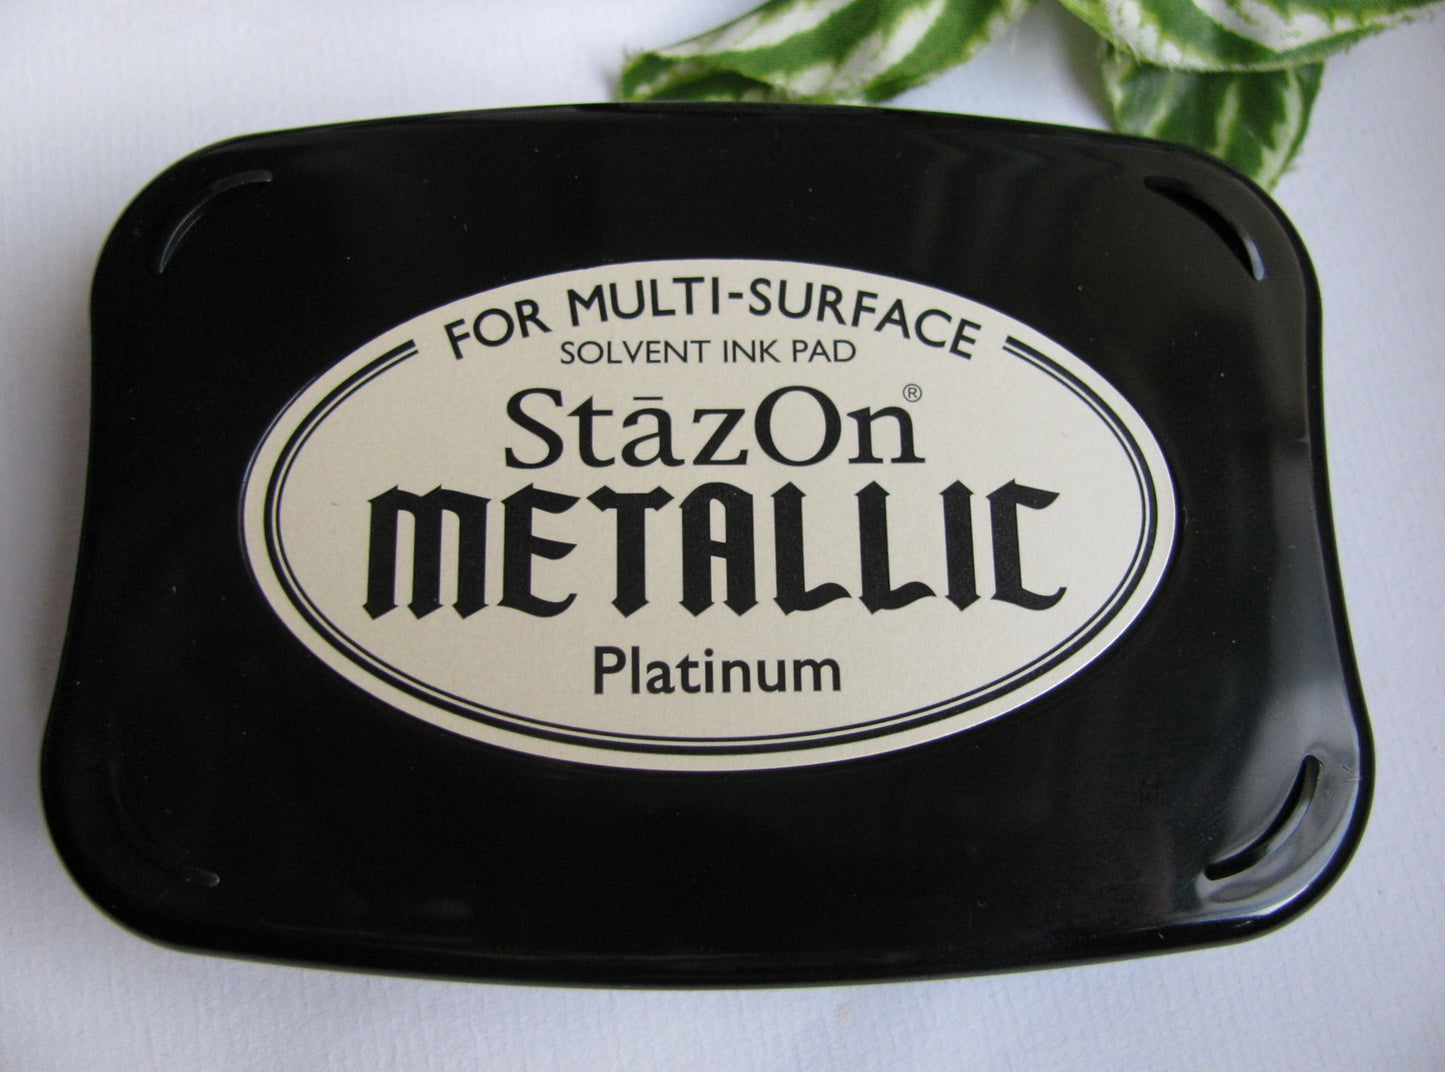 StazOn Stempelkissen Metallic Platinum mit Auffüller, Tsukineko, Wasserfest